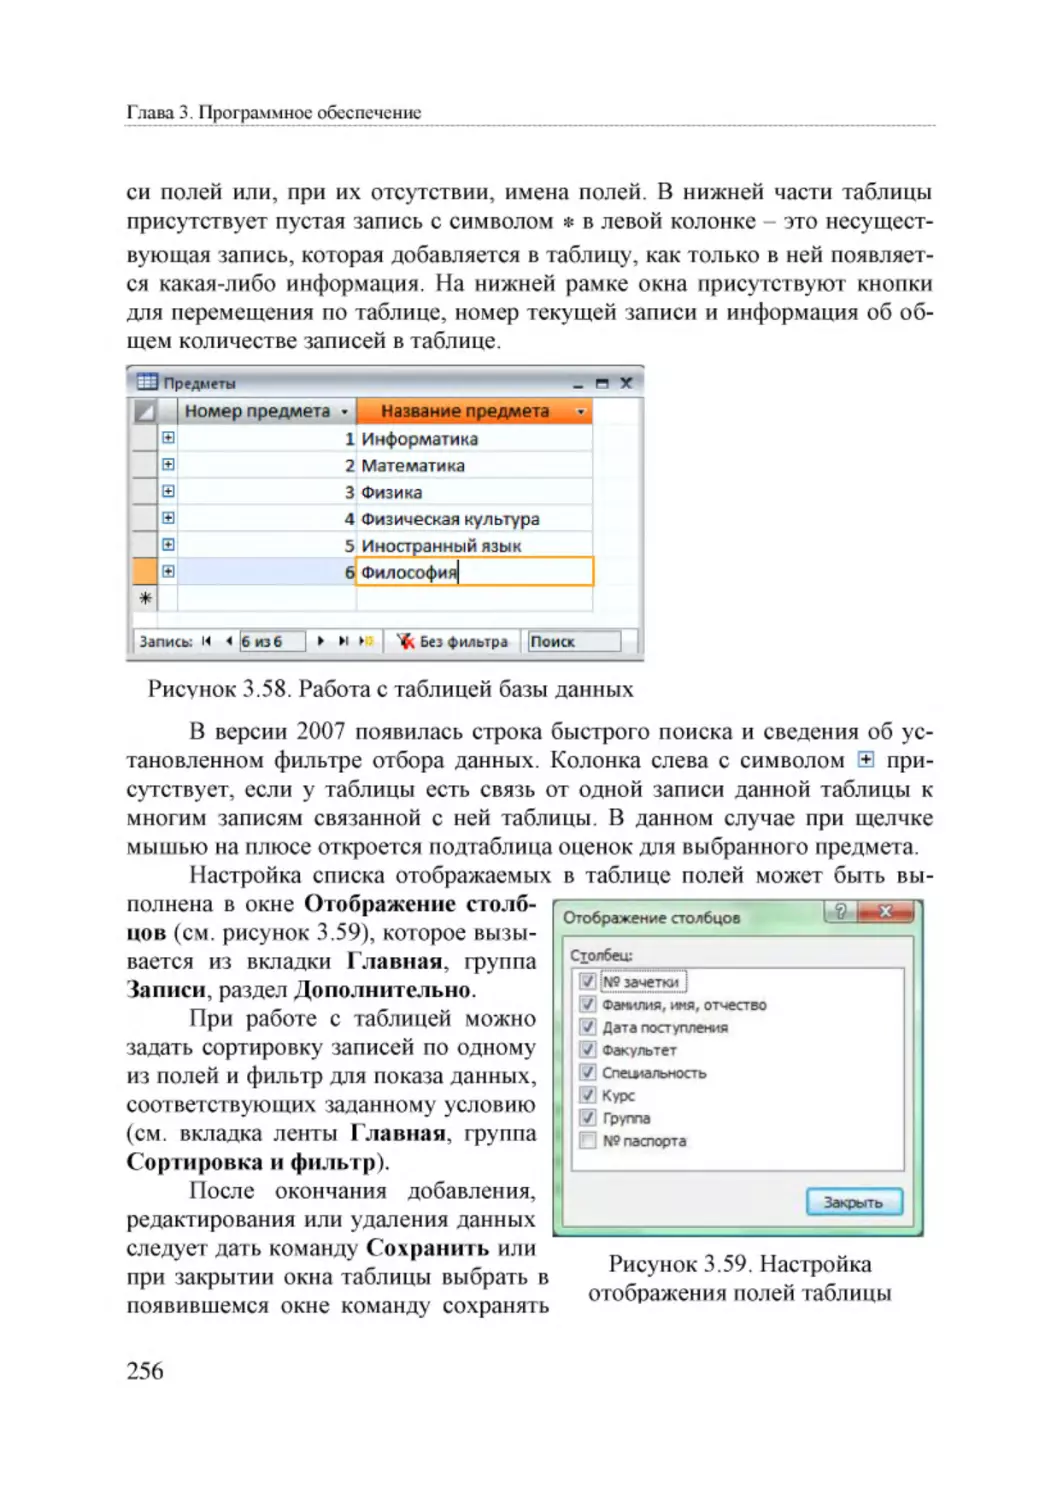 Informatika_Uchebnik_dlya_vuzov_2010 256